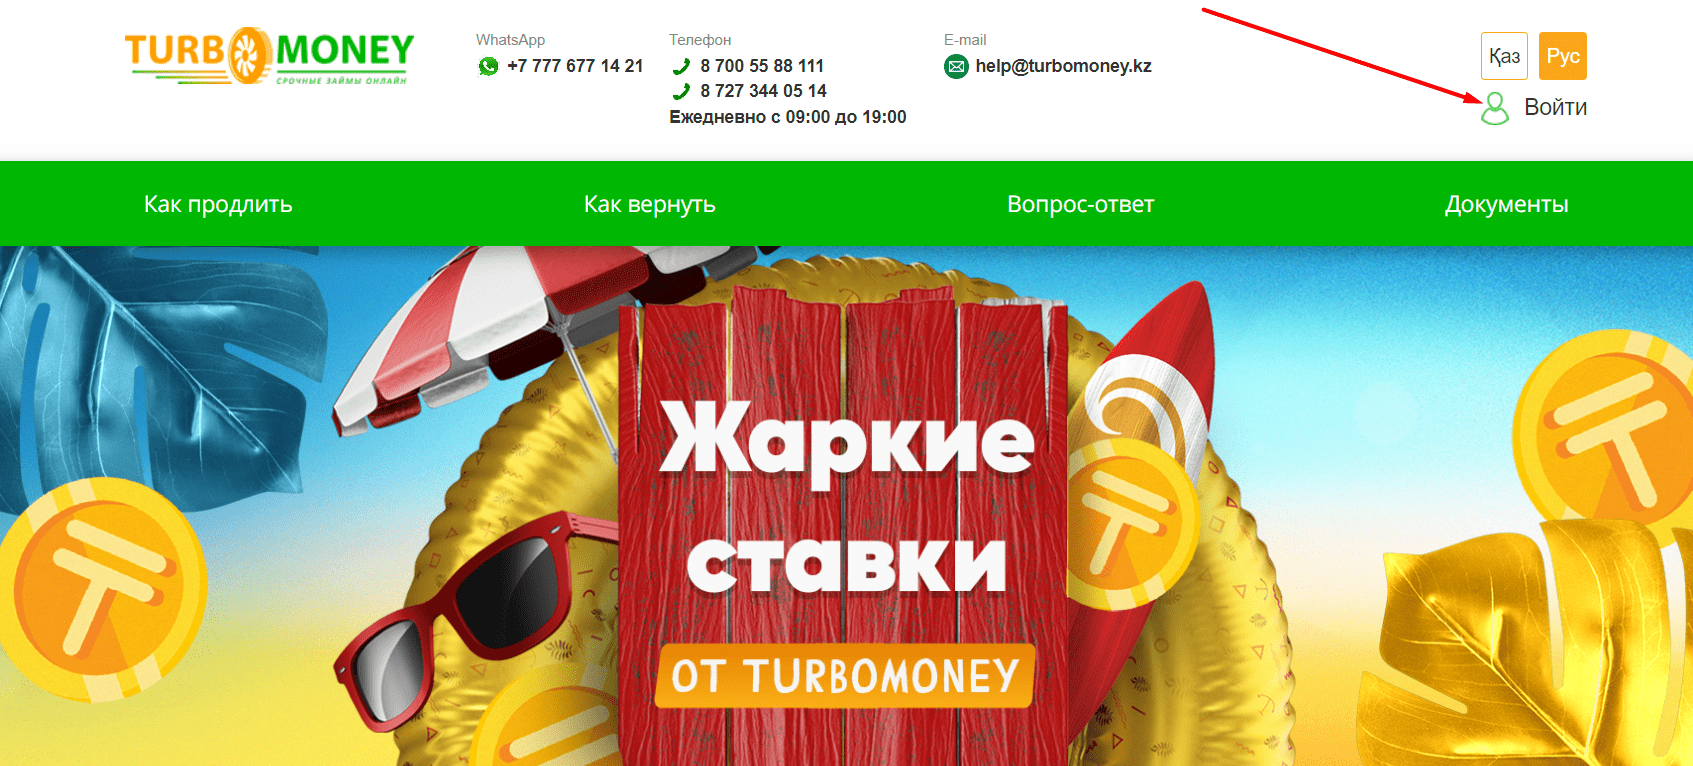 Турбомания (turbomoney.kz)